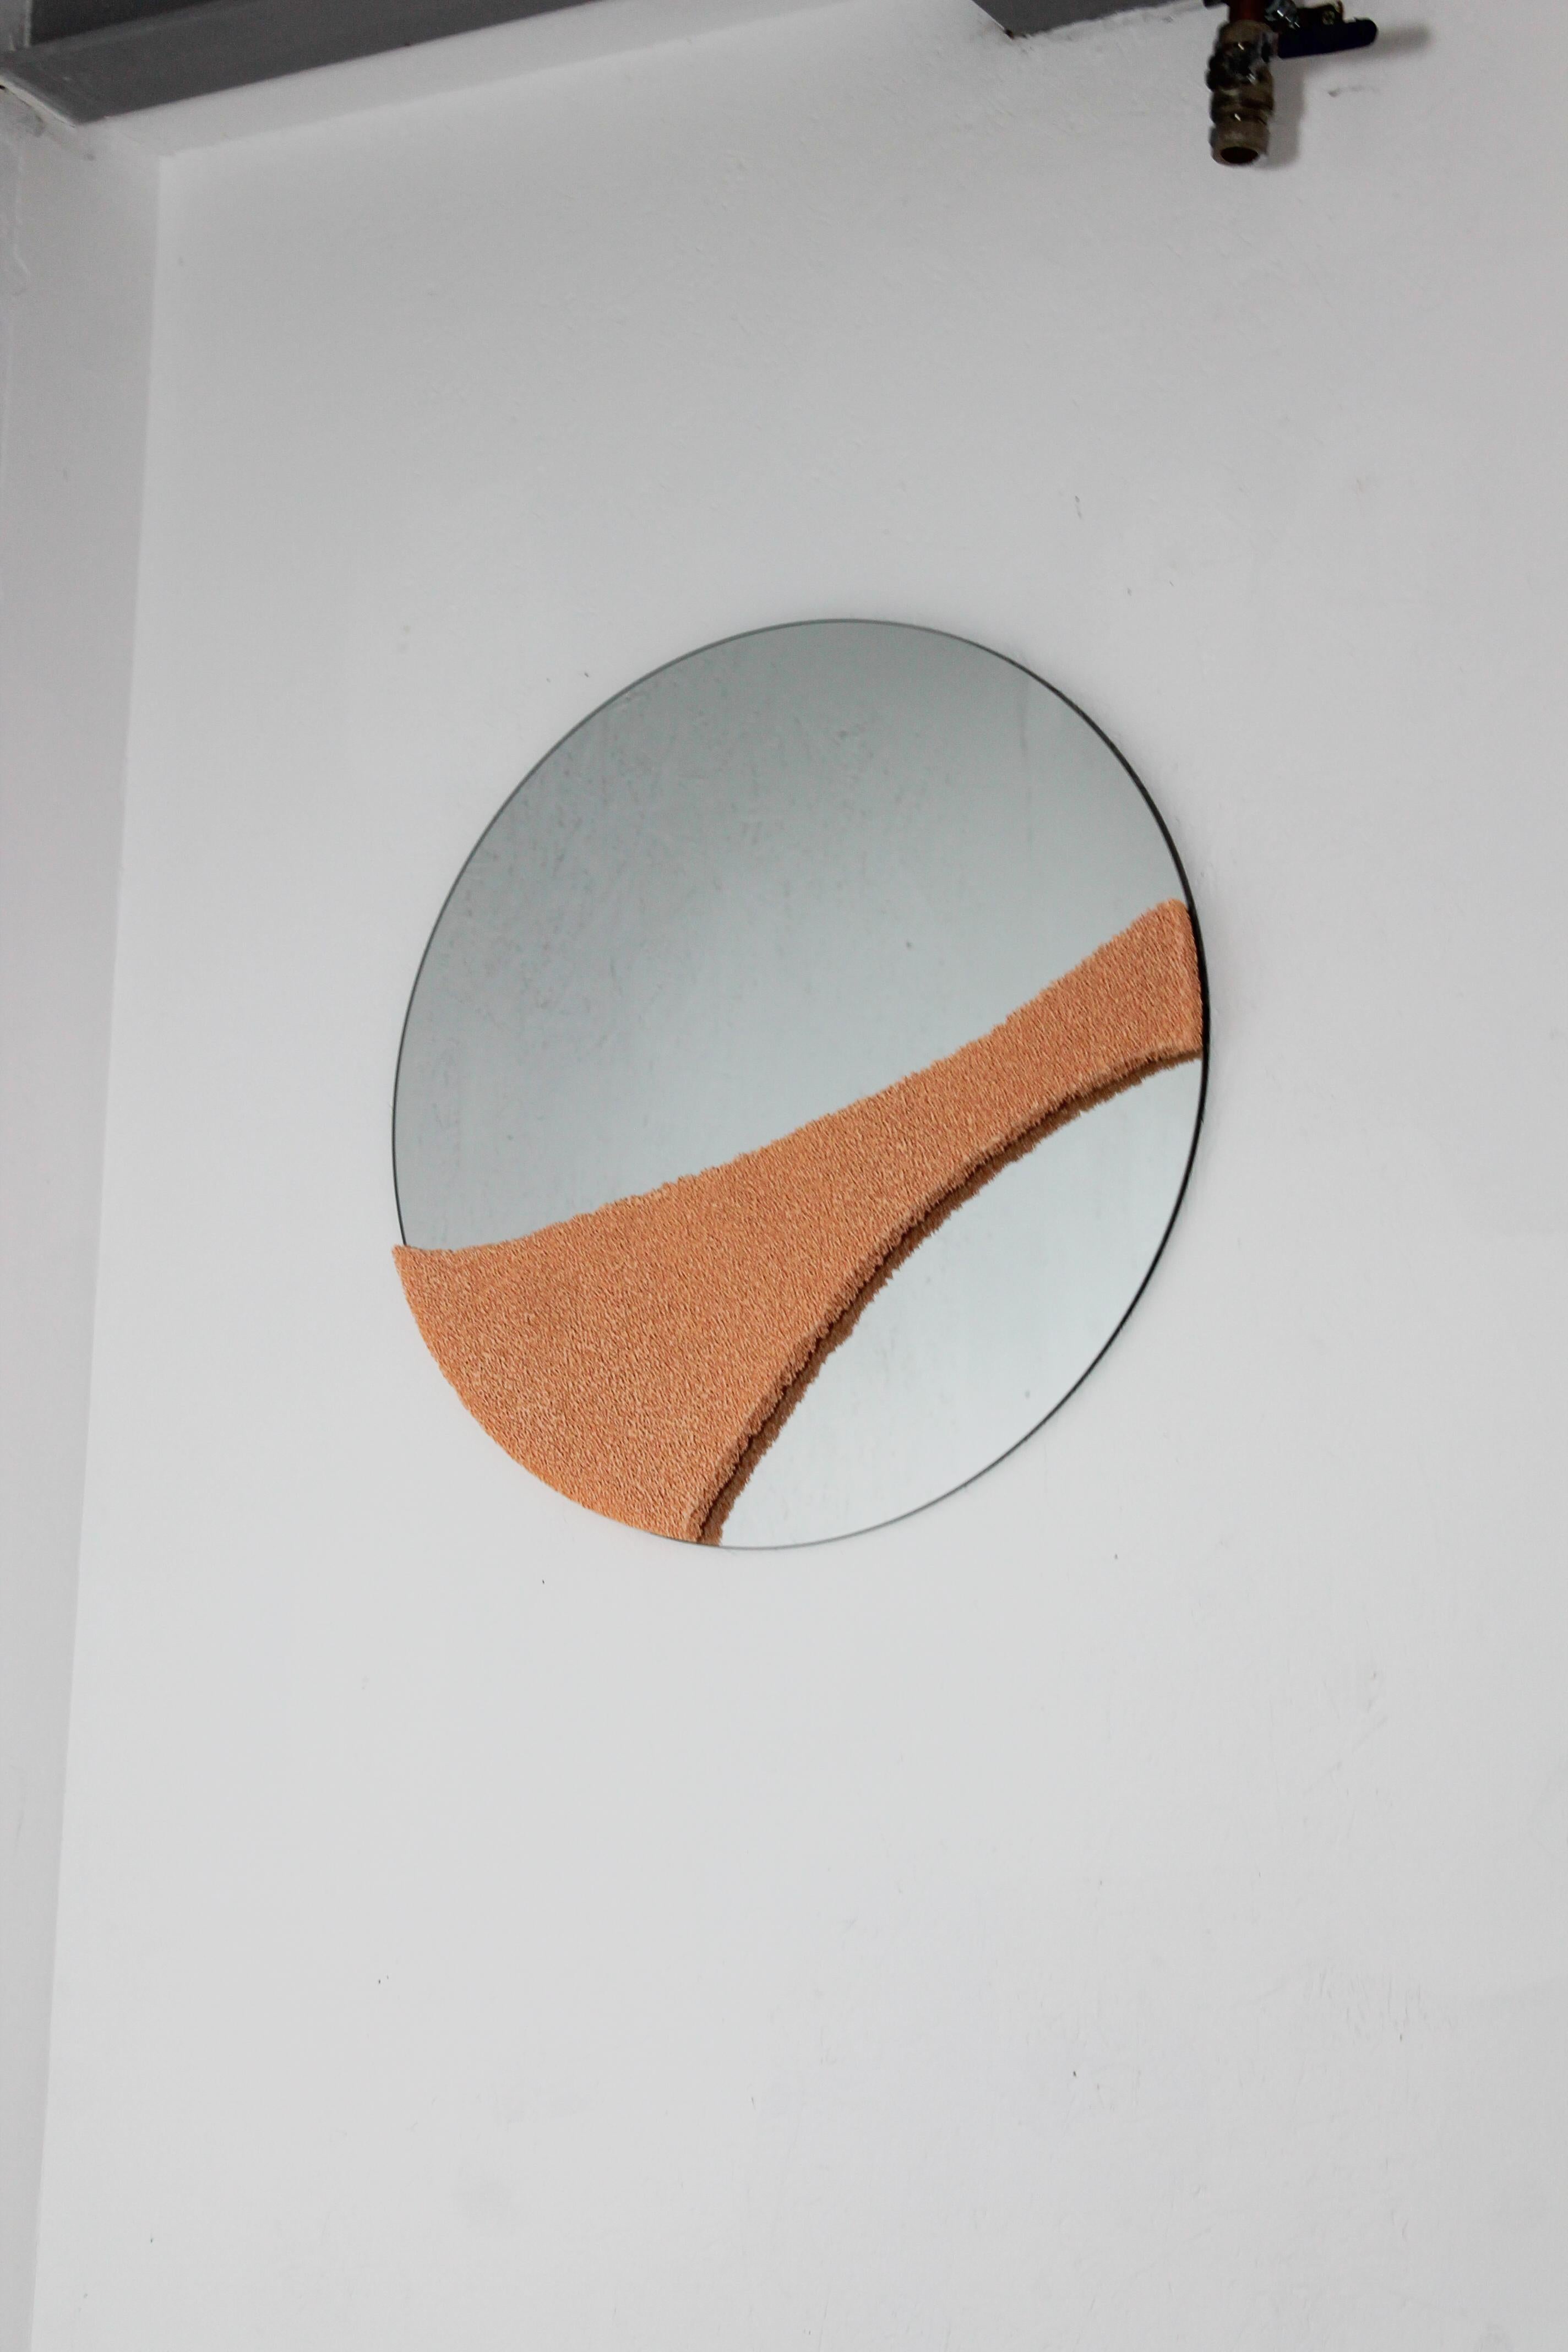 Le BC Mirror est l'un des plus grands miroirs réalisés par le designer Jordan Keaney. Il est orné de sa signature, la mousse de céramique, sur la face avant, transformant ces miroirs en sculptures fonctionnelles. La structure en céramique poreuse